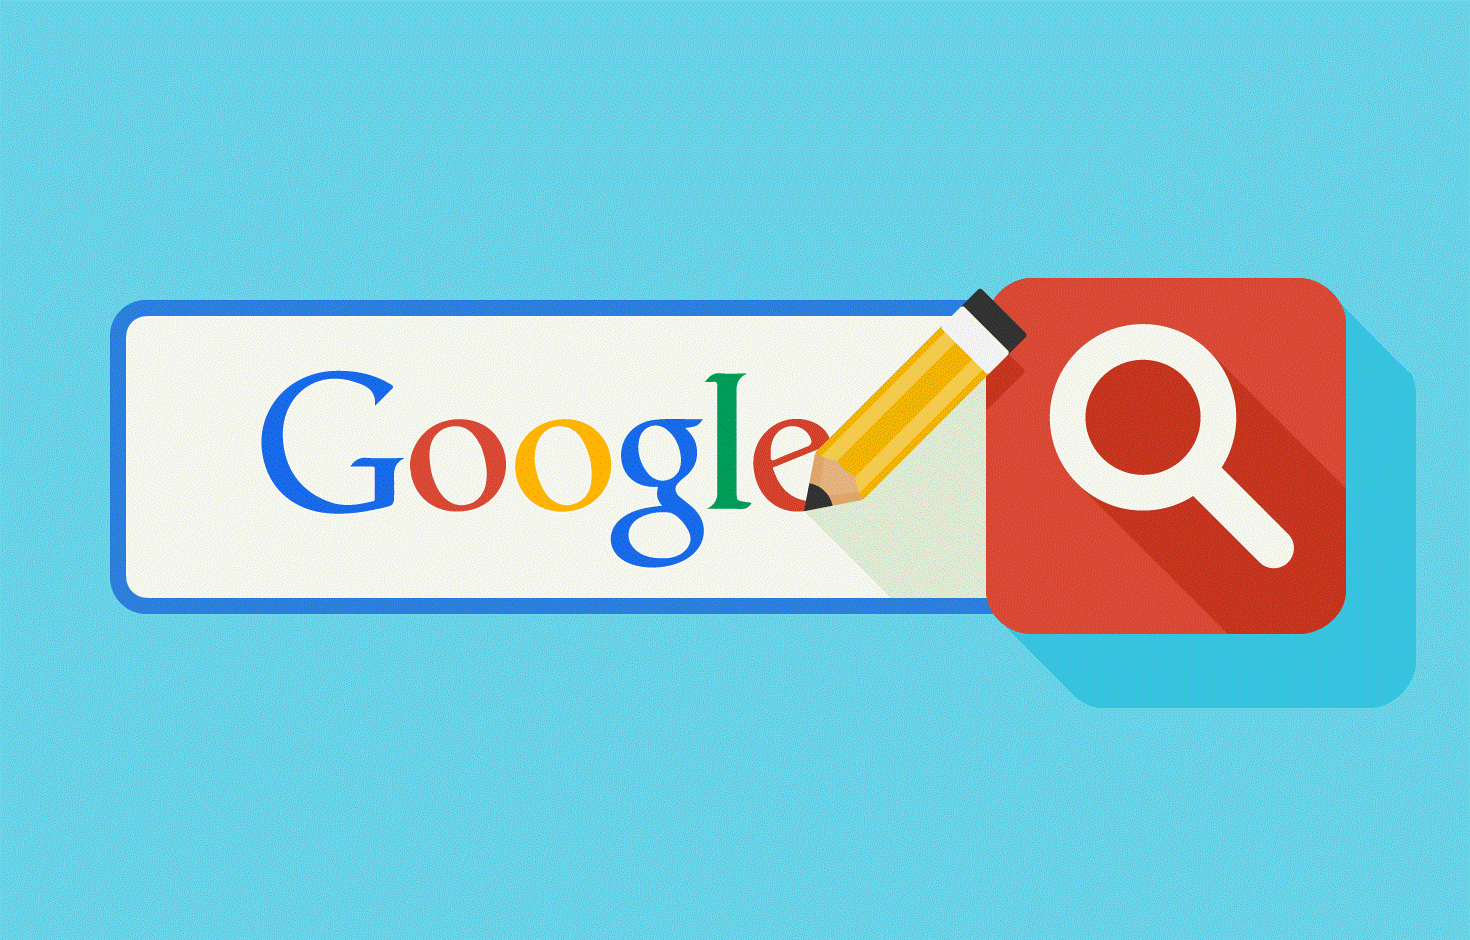 Cần bao lâu để nội dung được xếp hạng lên Top Google?